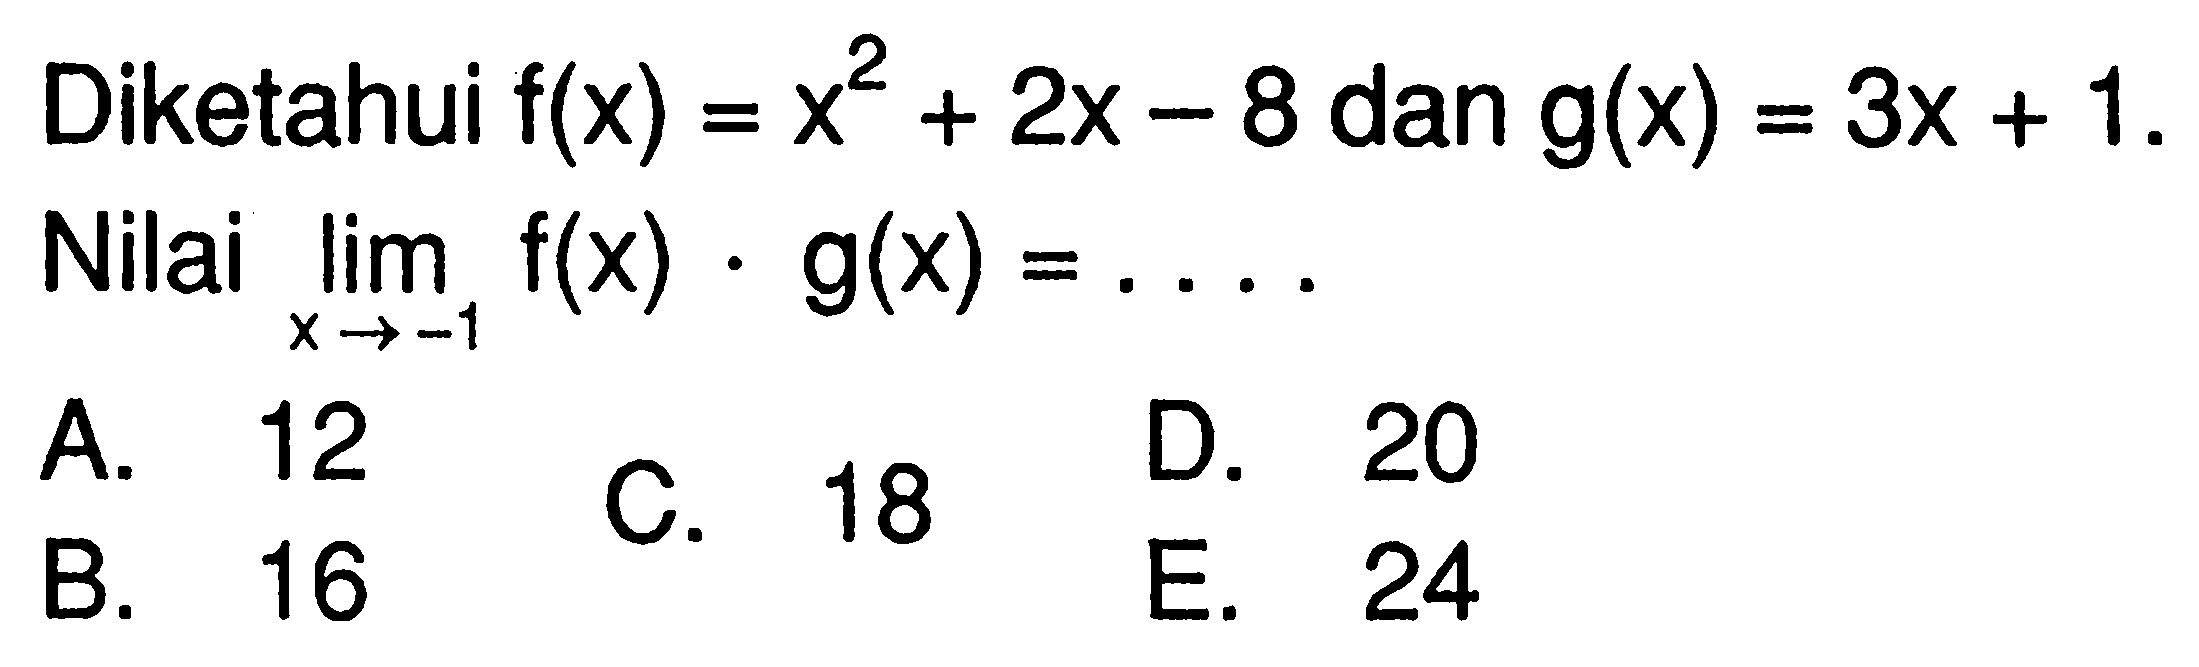 Diketahui  f(x)=x^2+2x-8  dan  g(x)=3x+1  Nilai  lim x->-1 f(x) . g(x)=.... 
